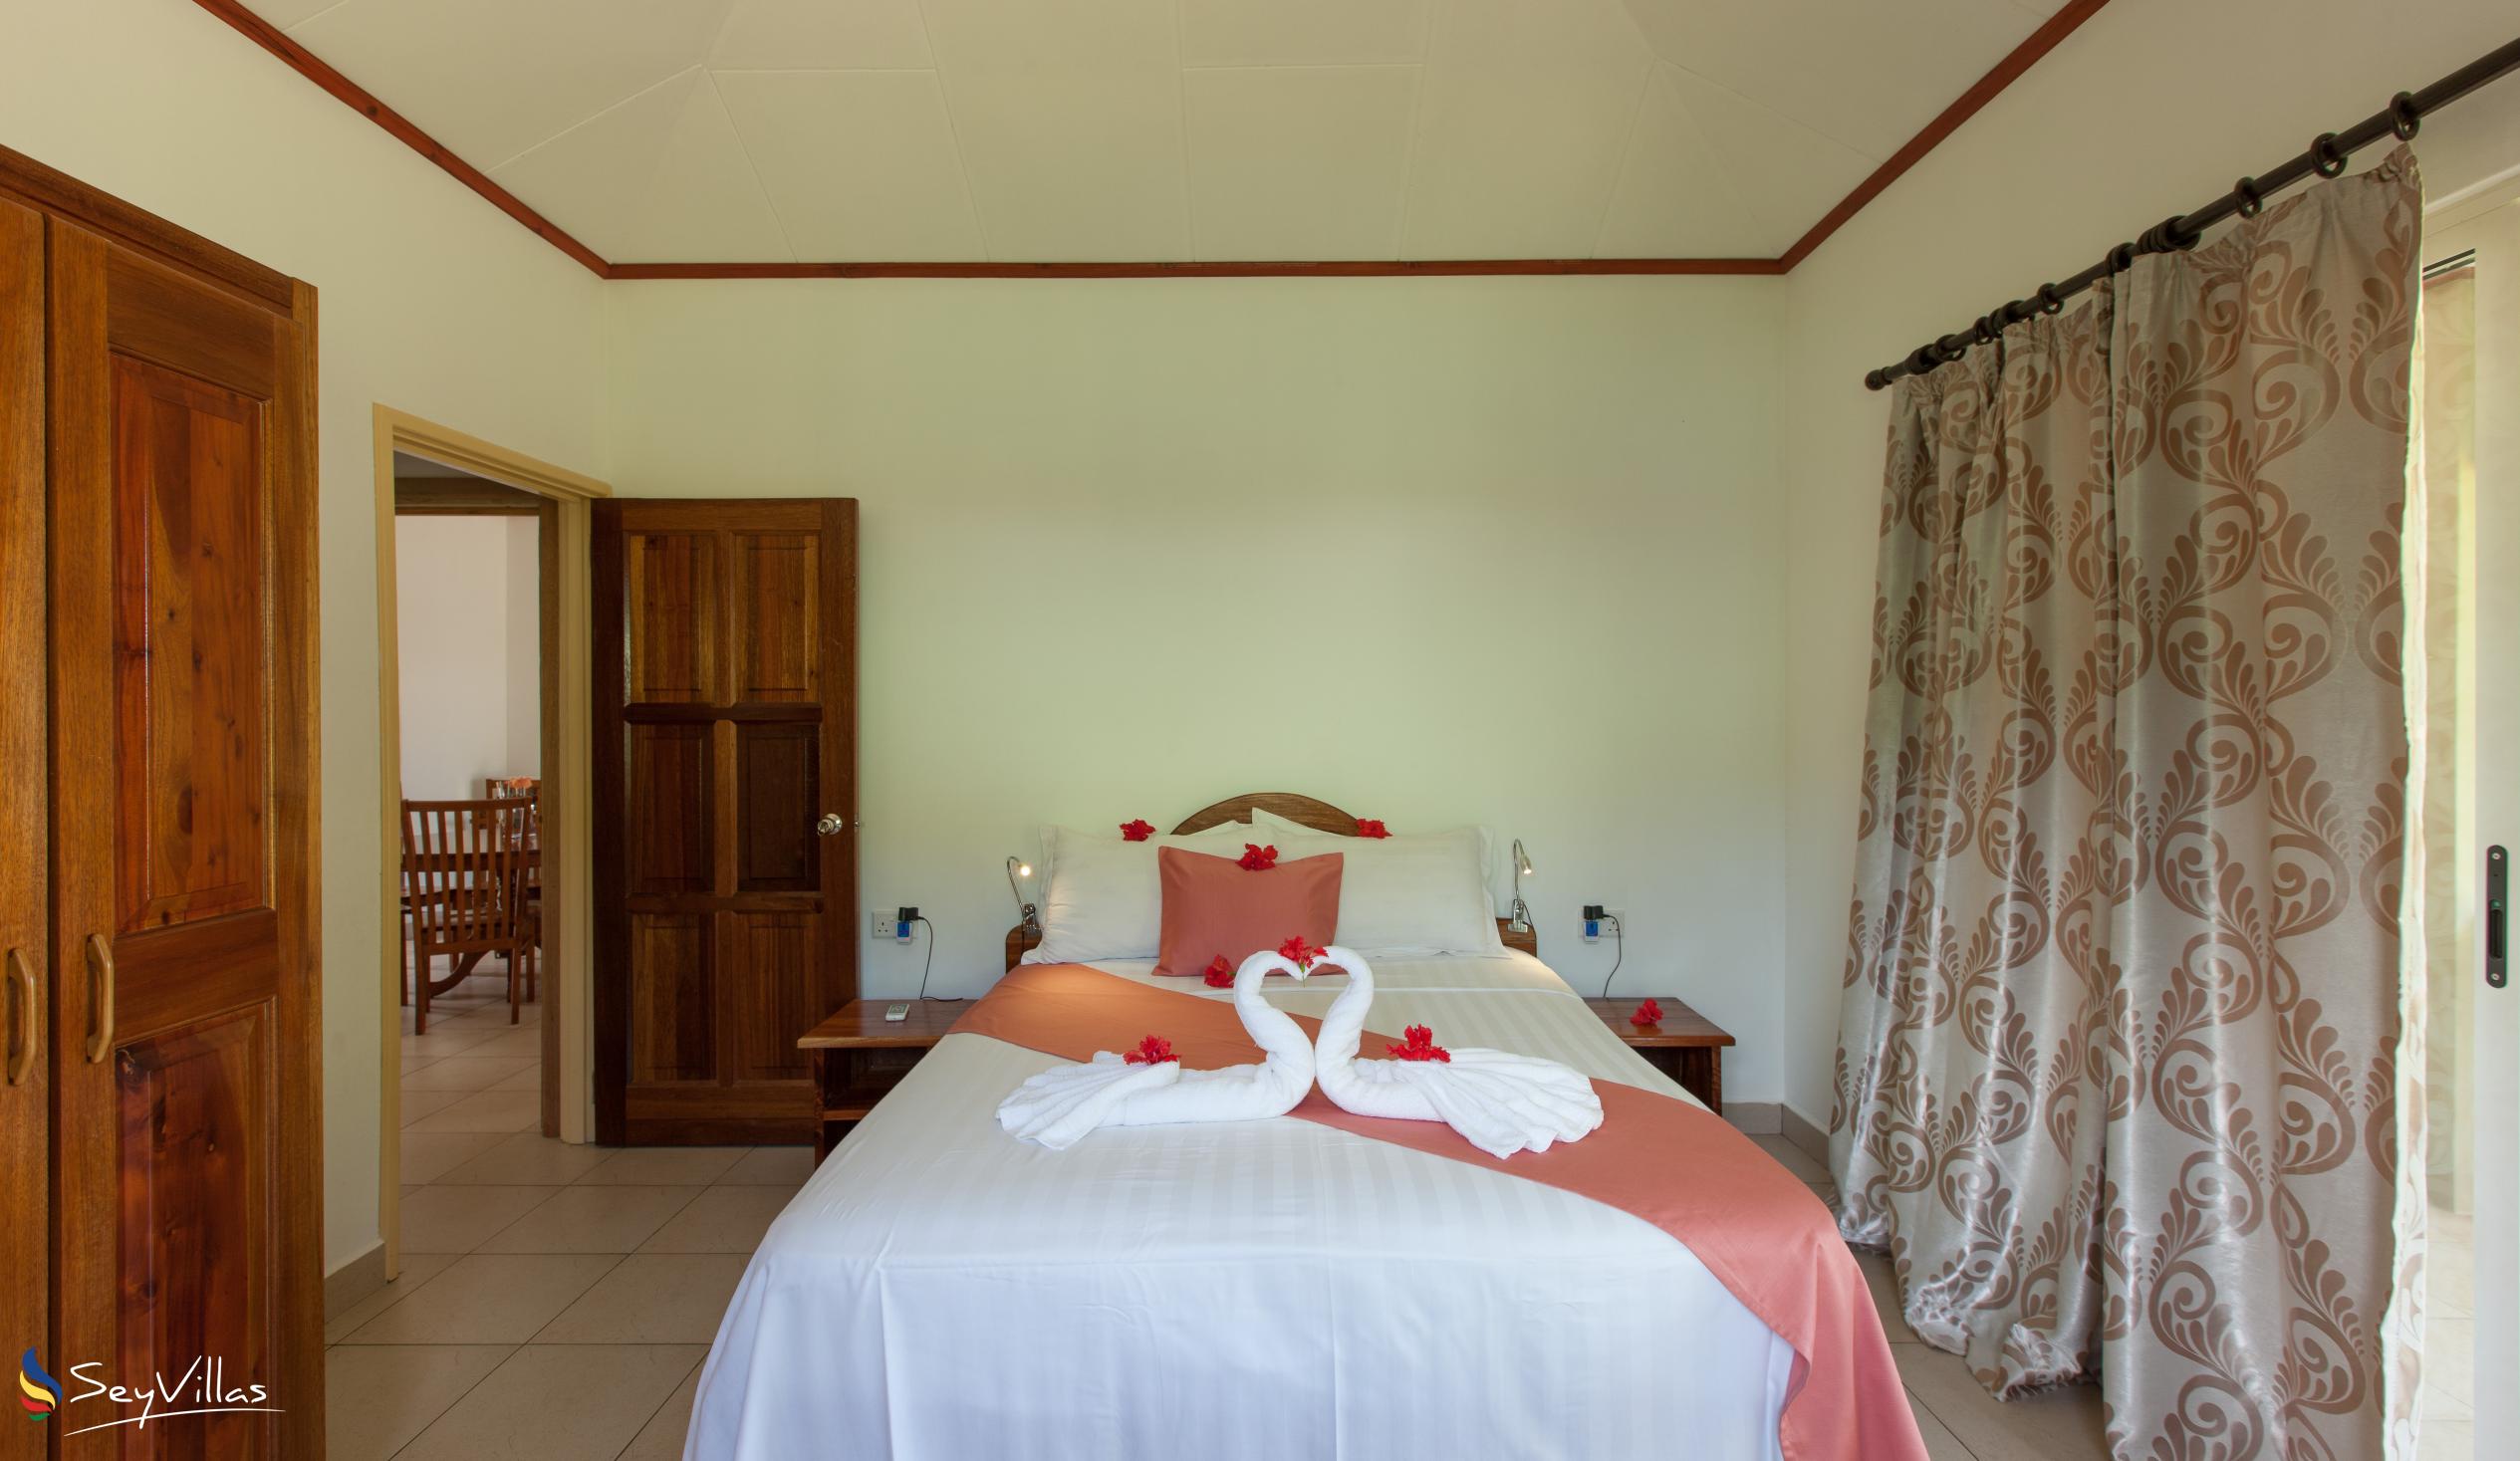 Photo 26: Hostellerie La Digue - 3-Bedroom Chalet - La Digue (Seychelles)